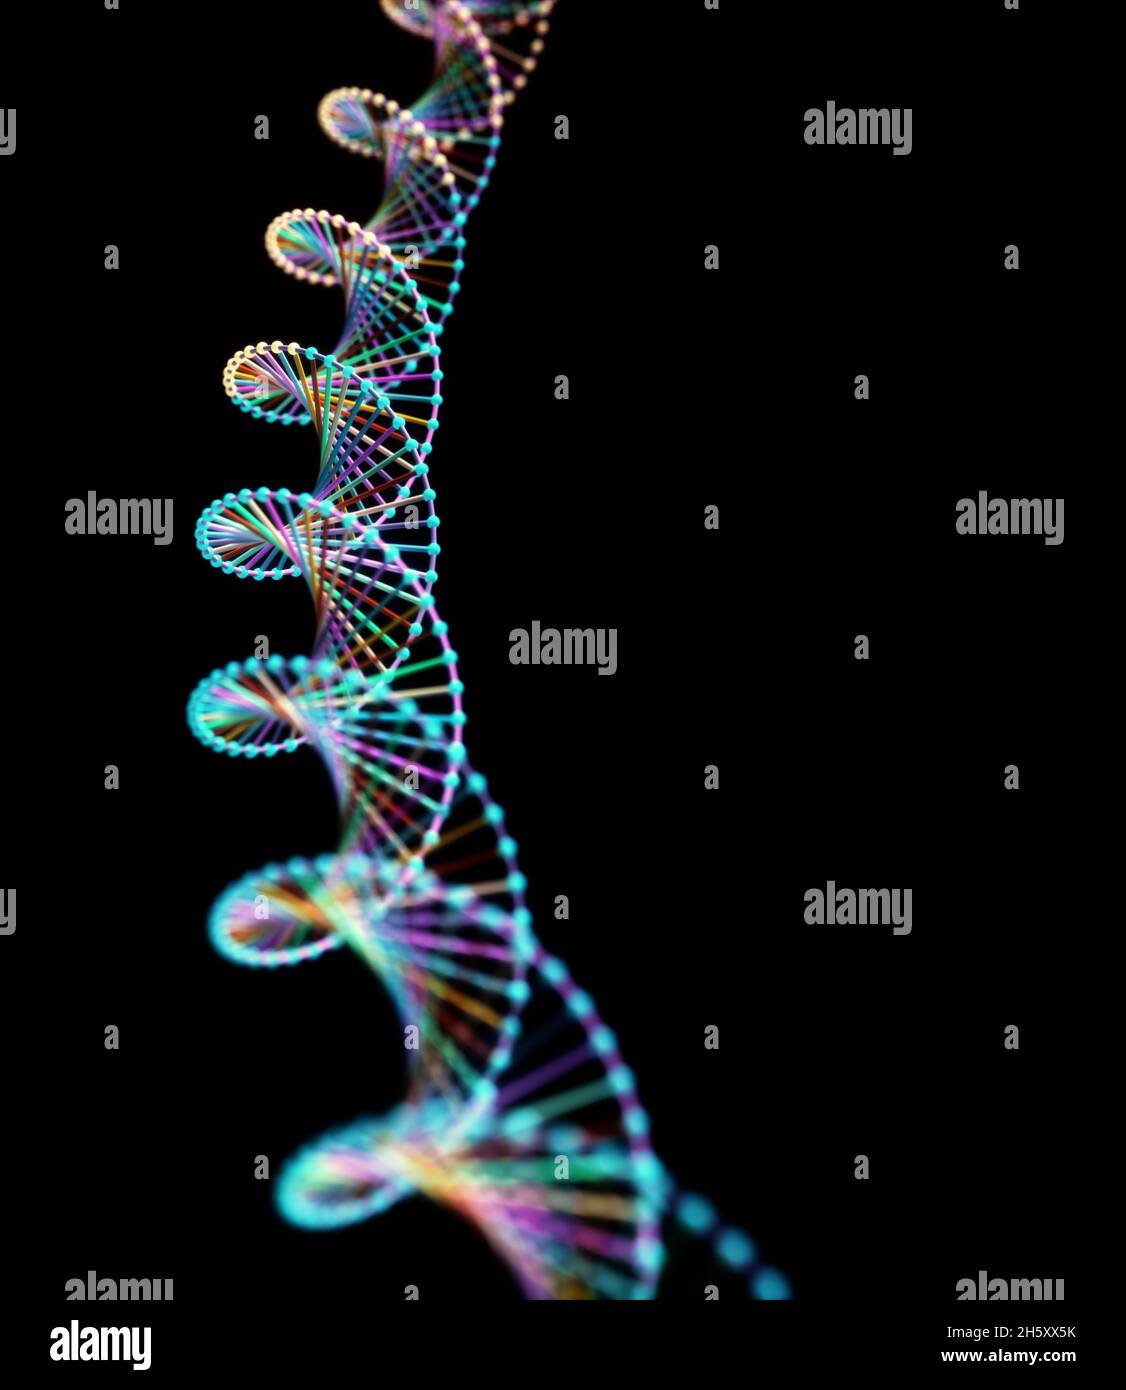 Immagine astratta dei codici genetici DNA. Immagine concettuale da utilizzare come sfondo. Illustrazione 3D. Foto Stock